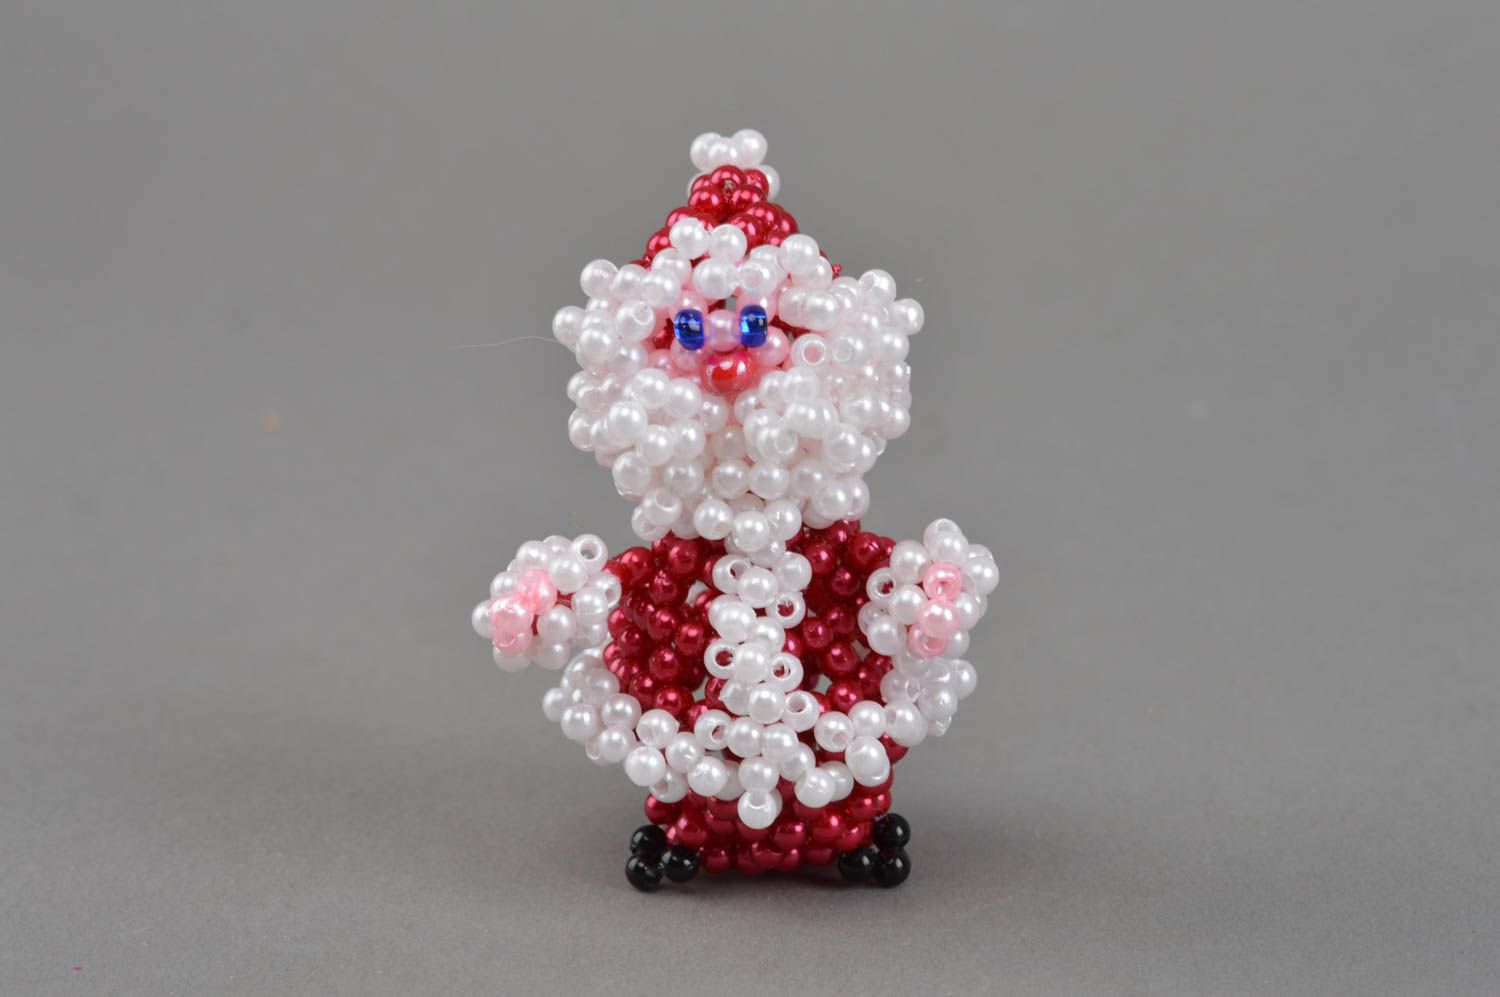 Handmade schöne Deko Figurine Weihnachtsmann aus Glasperlen originell schön foto 3